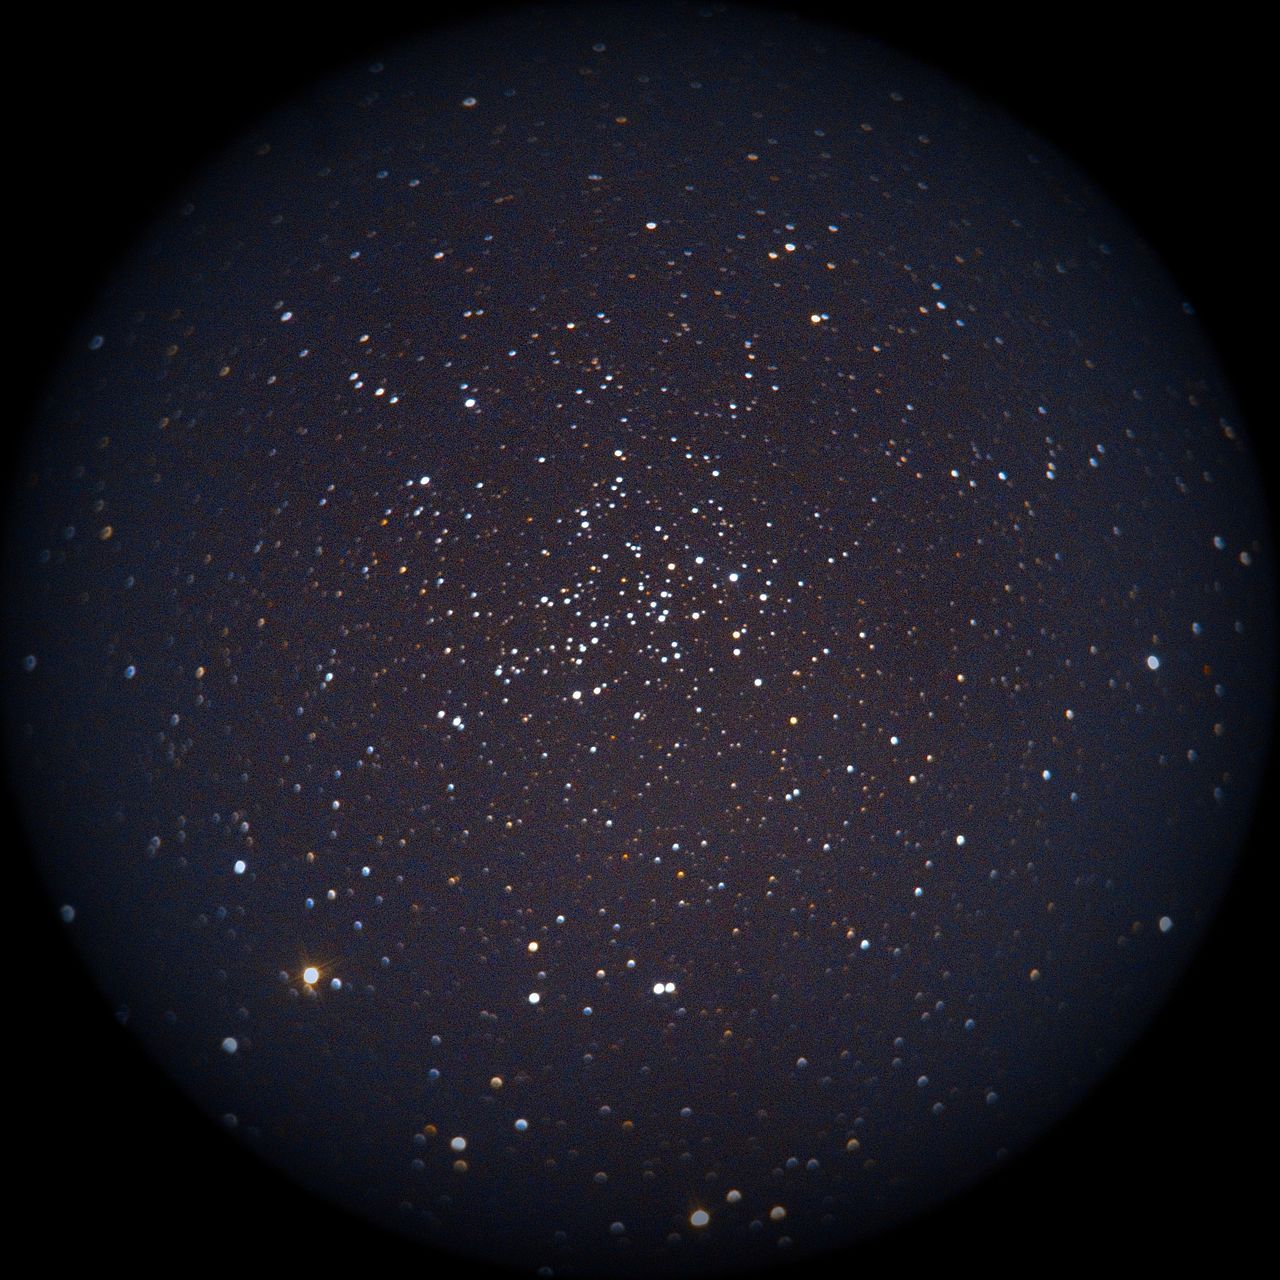 Image of NGC1528